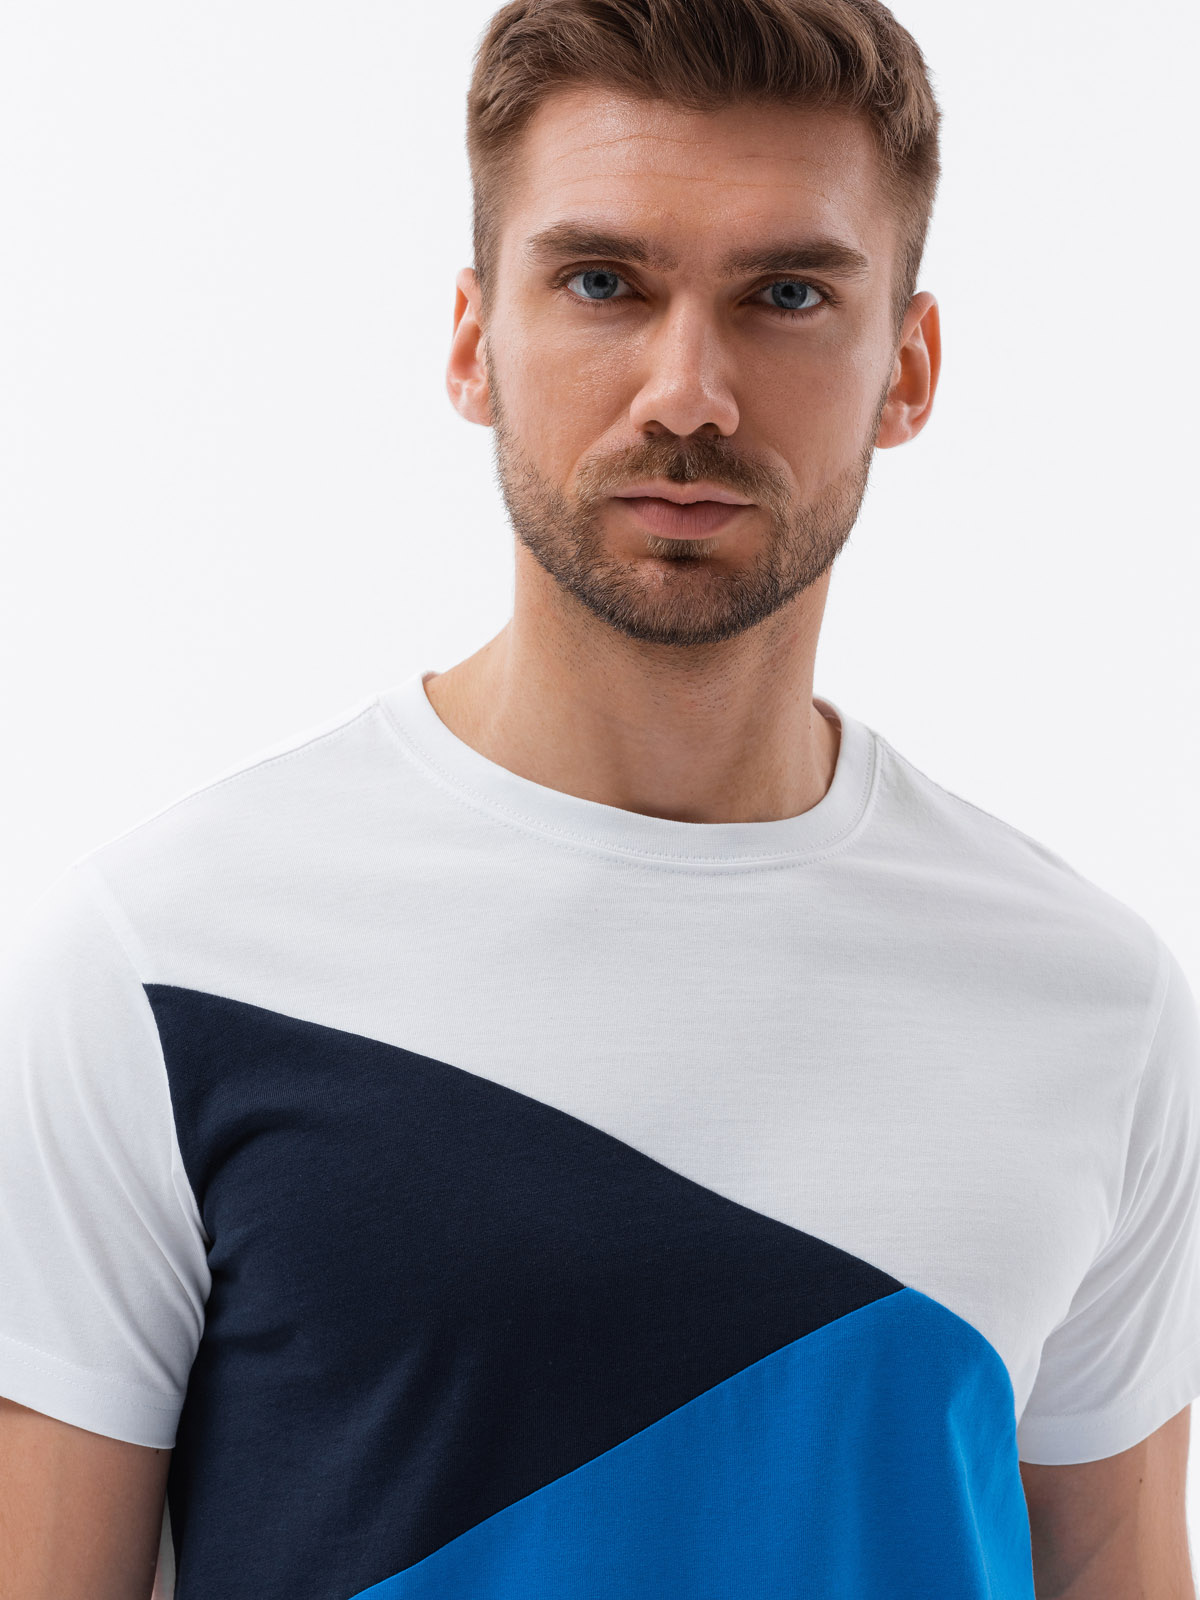 Men's tri-color t-shirt - blue V4 S1640 | Ombre.com - Men's